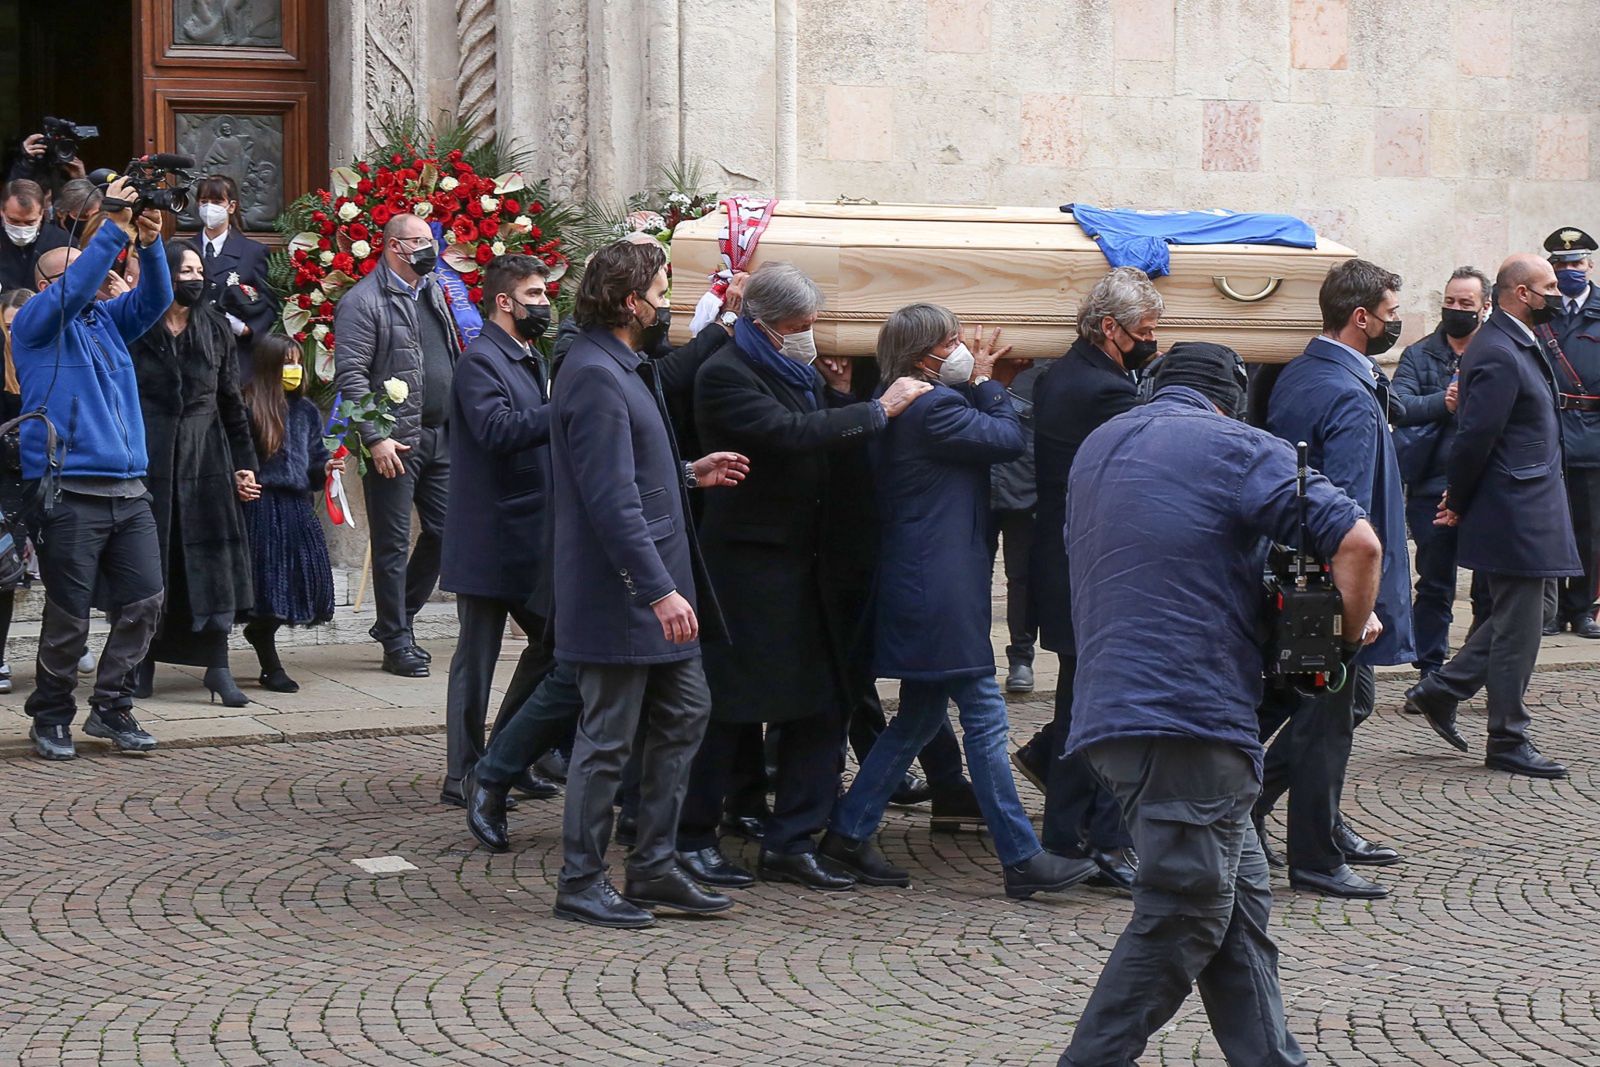 Skandal w czasie pogrzebu Paolo Rossiego. Dla niektórych nie ma świętości